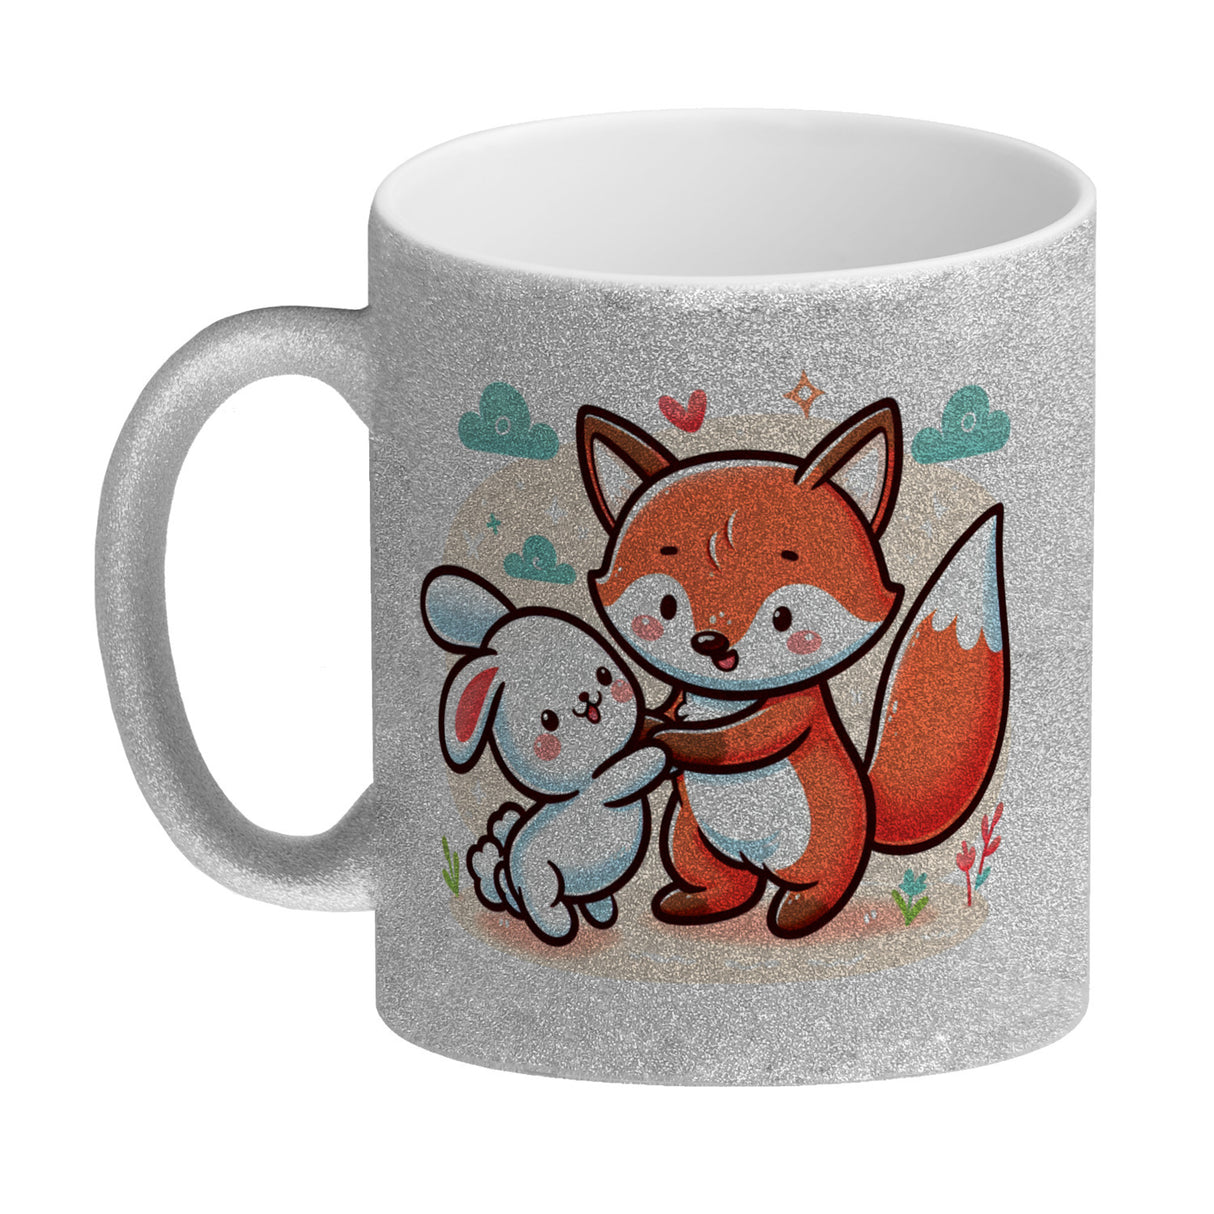 Fuchs und Kaninchen Kaffeebecher